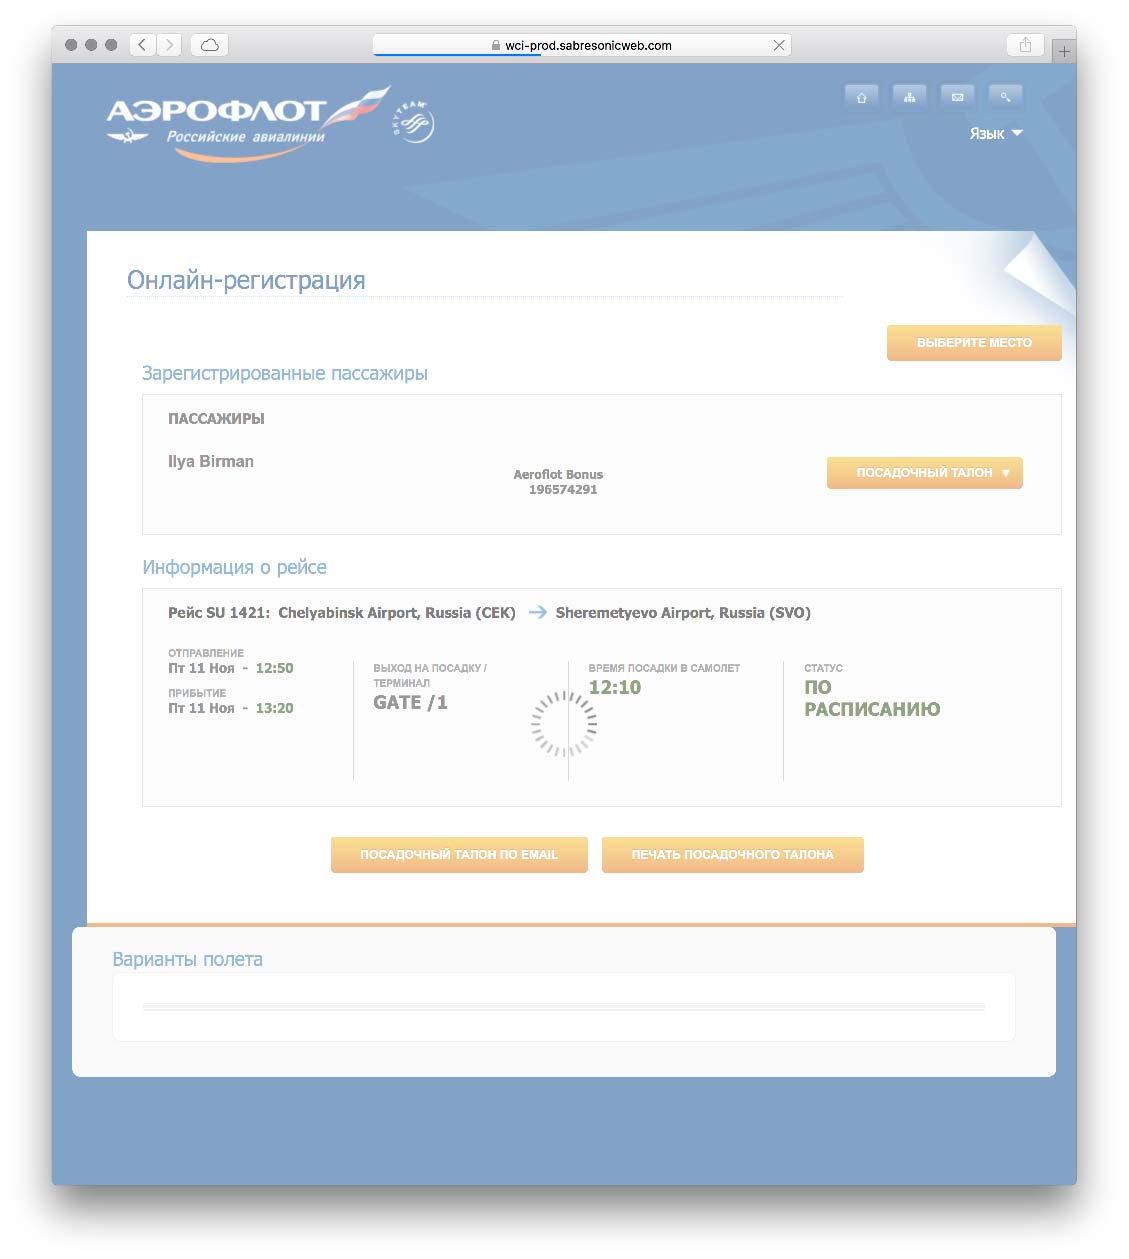 Онлайн-регистрация на рейс аэрофлота: что надо знать